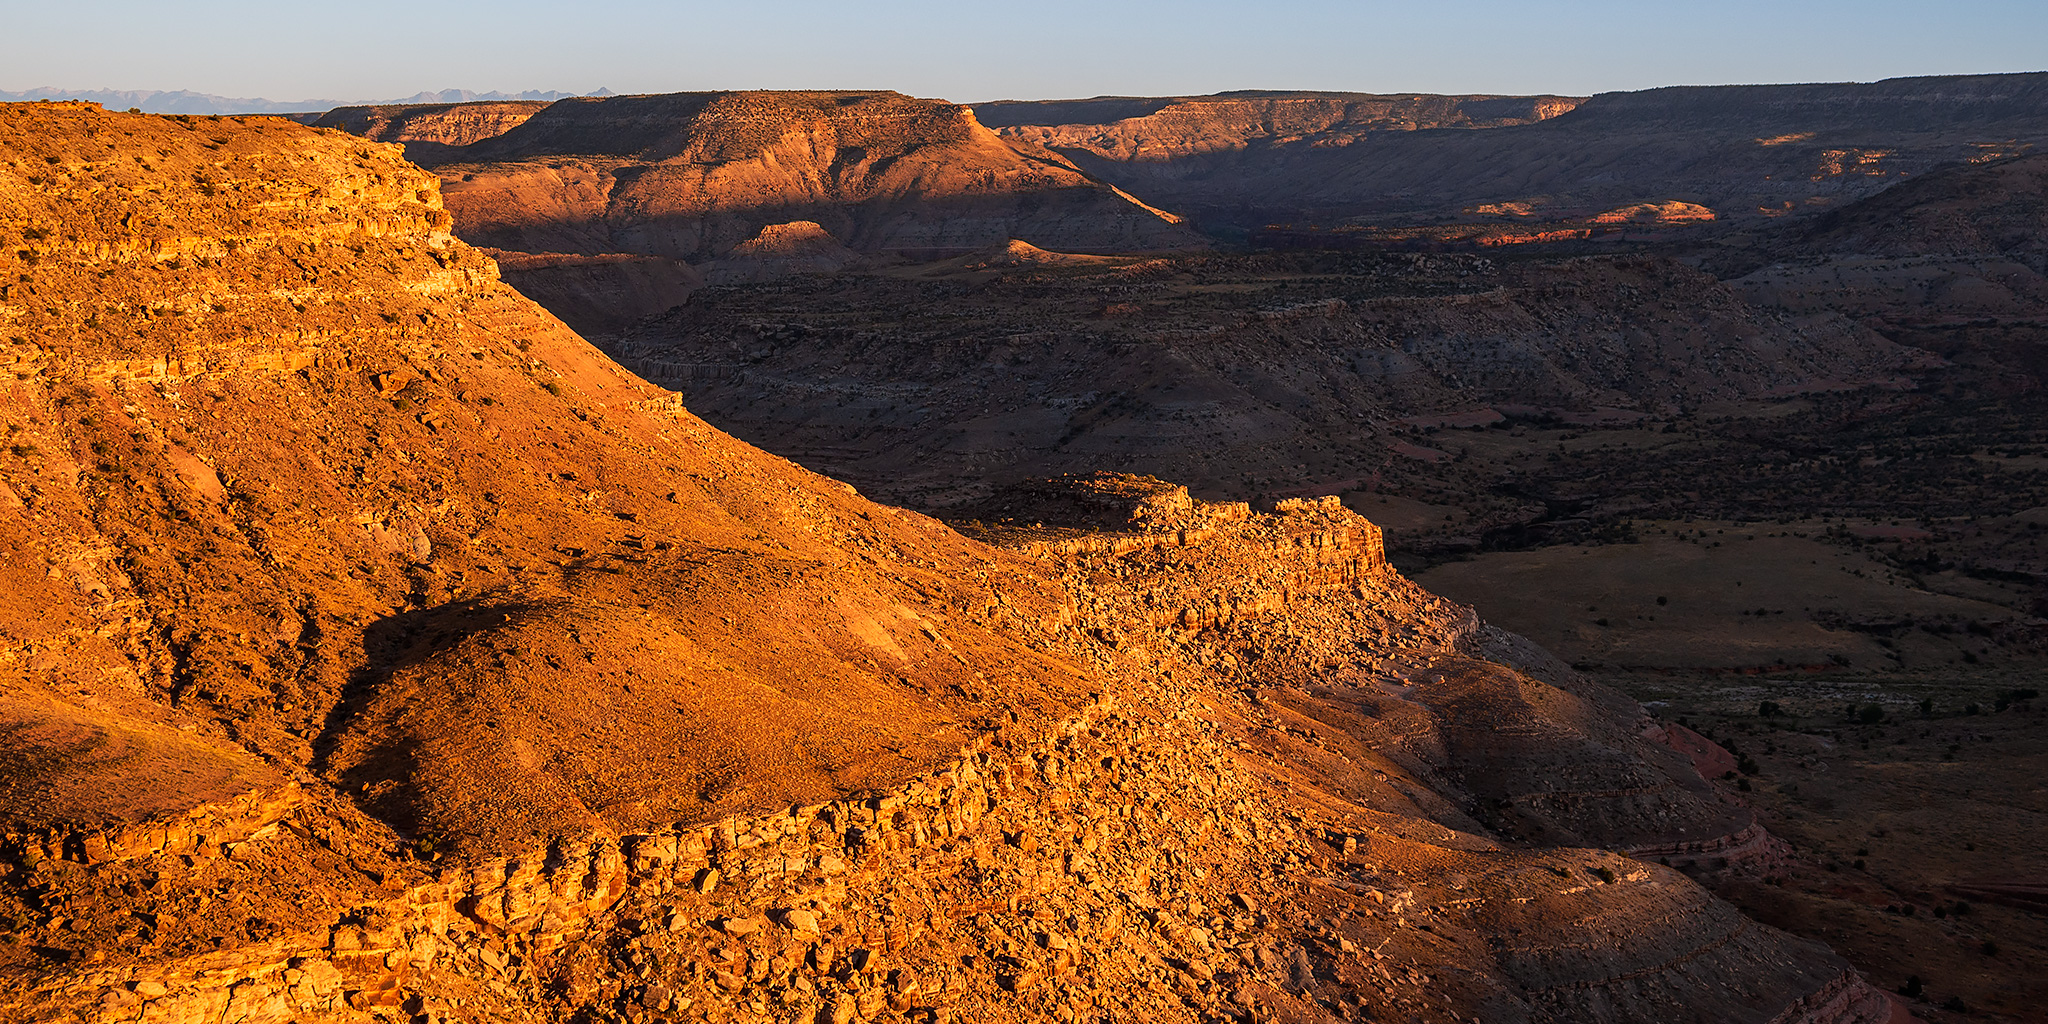 Stinking Desert National Monument